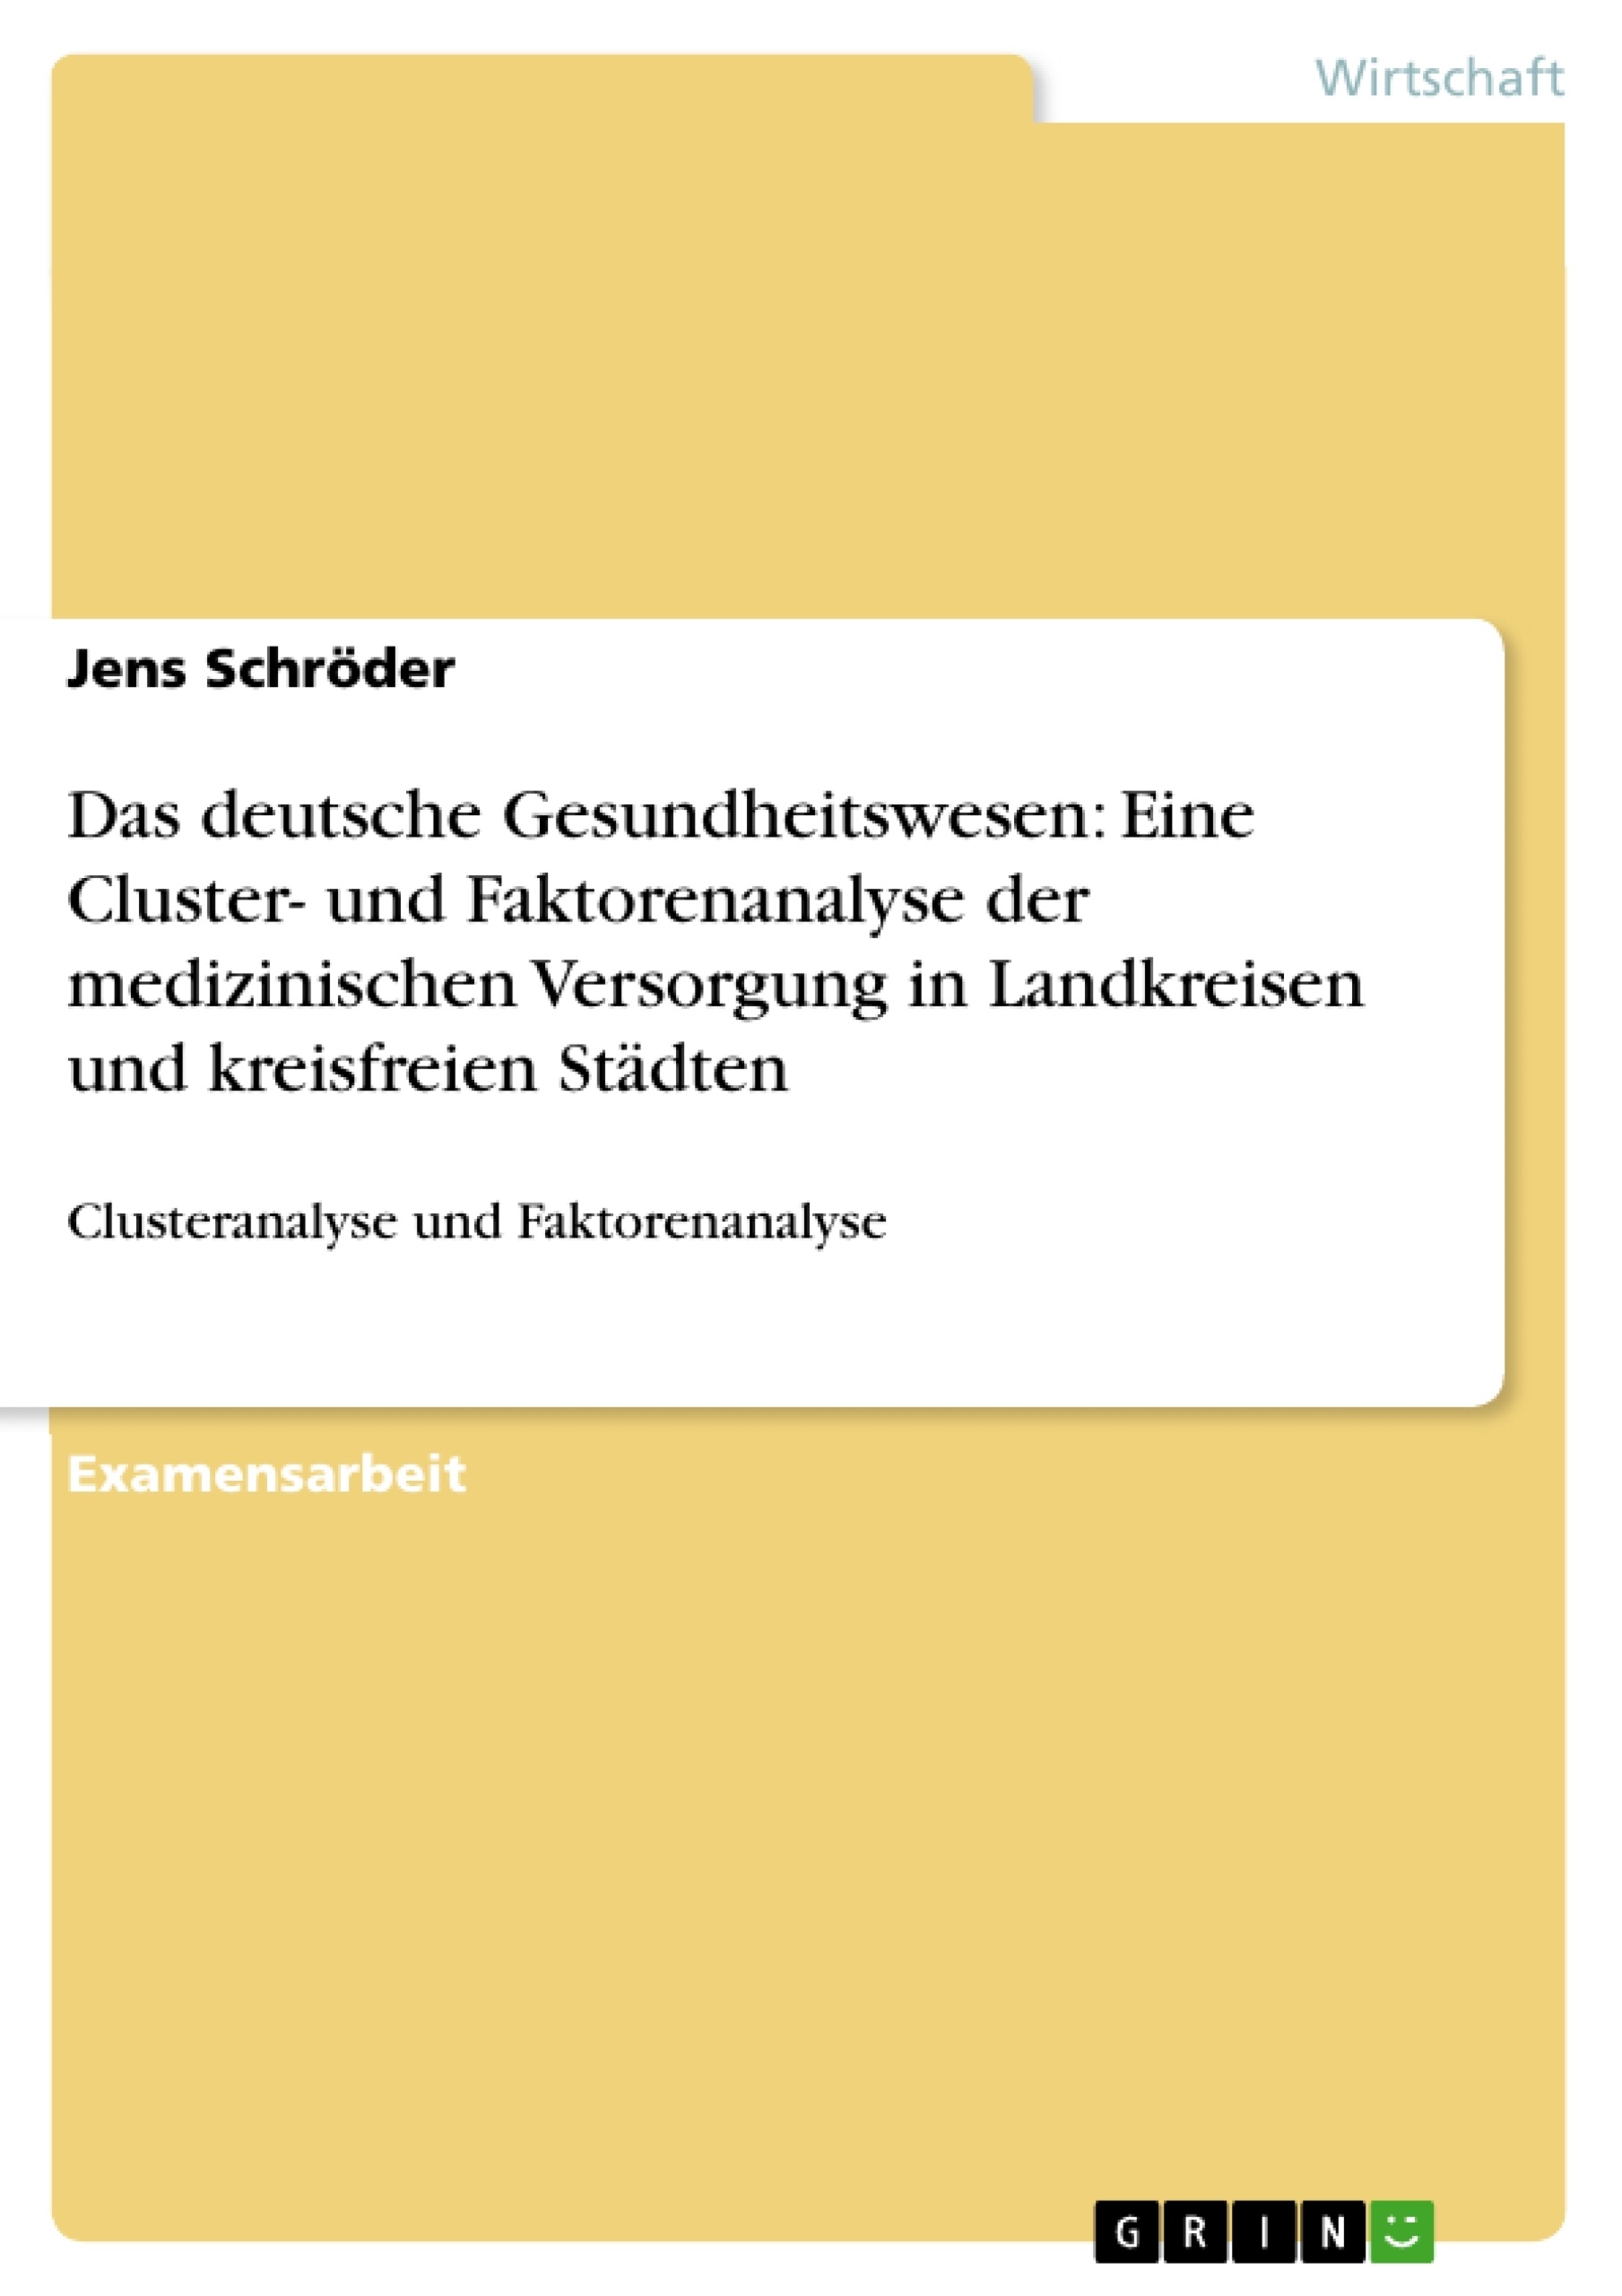 Title: Das deutsche Gesundheitswesen: Eine Cluster- und Faktorenanalyse der medizinischen Versorgung in Landkreisen und kreisfreien Städten